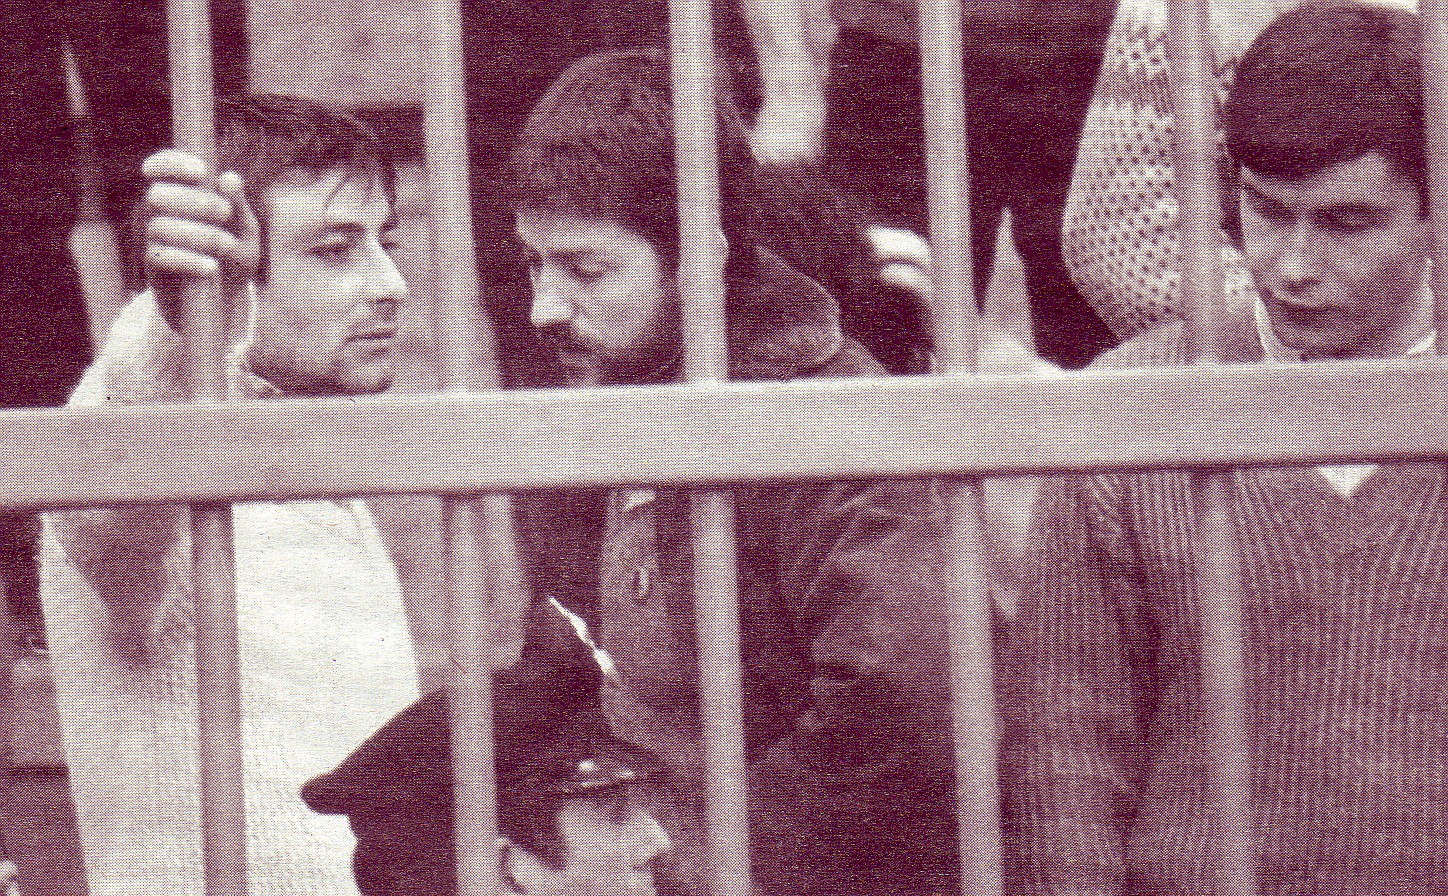 Cesare Battisti nel carcere di Frosinone Proletari armati per il comunismo